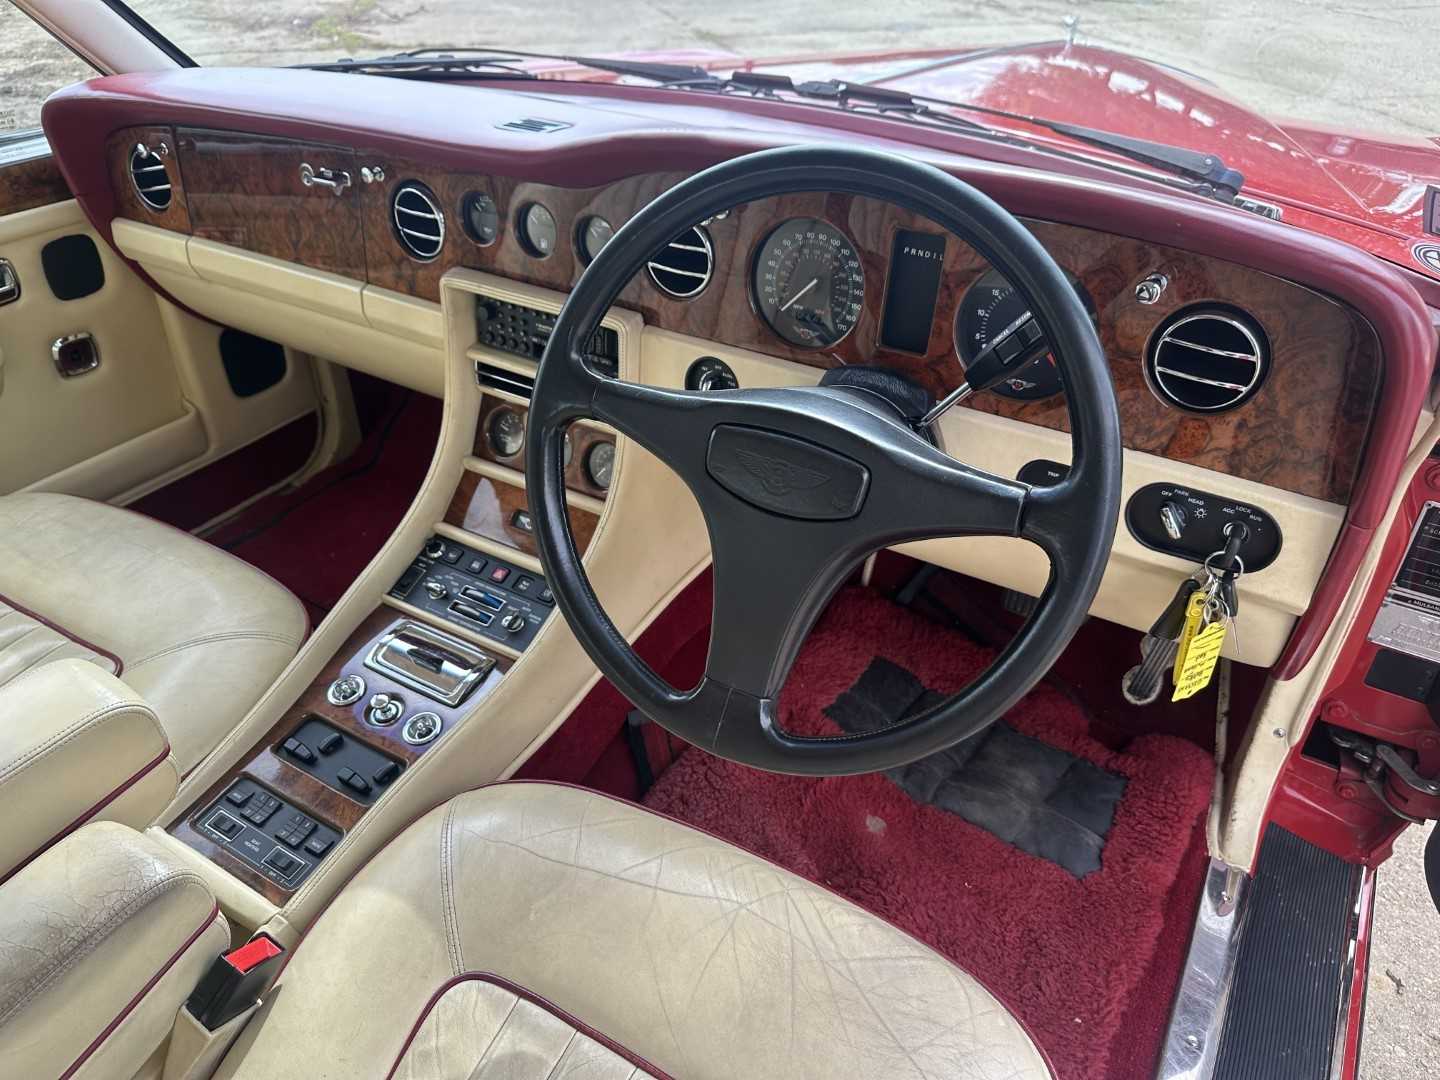 1990 Bentley Mulsanne S saloon, 6.75 litre V8, automatic, reg. no. G269 OKY. - Bild 22 aus 40